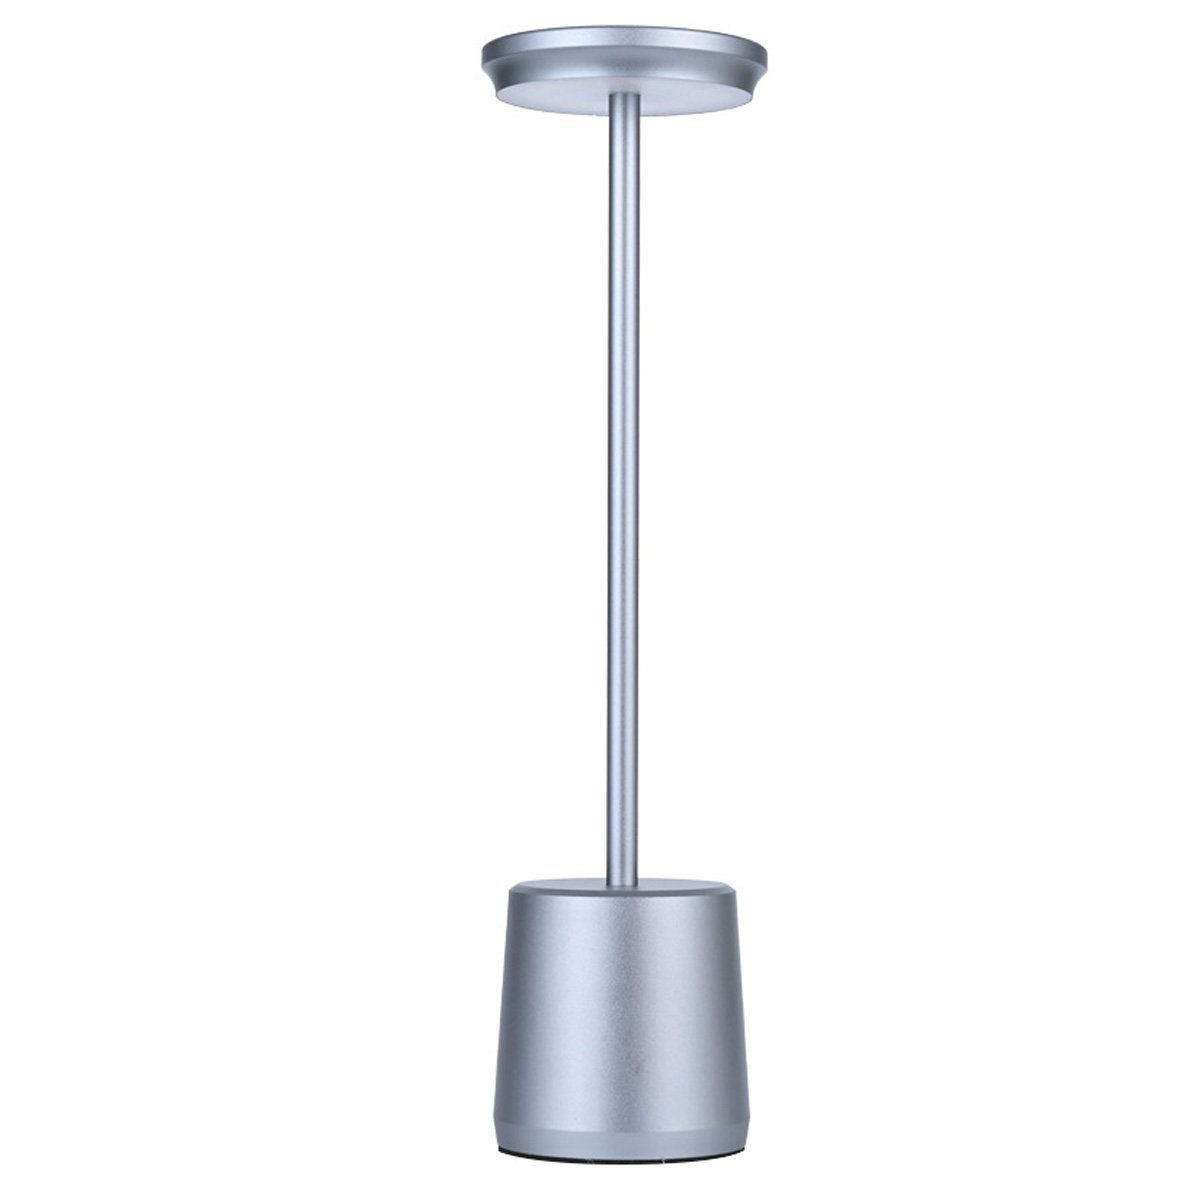 DOPWii Grau 1.6W aus LED Lampenkörper Schreibtischlampe,490*340mm Schreibtischlampe Aluminium,Dimmbar